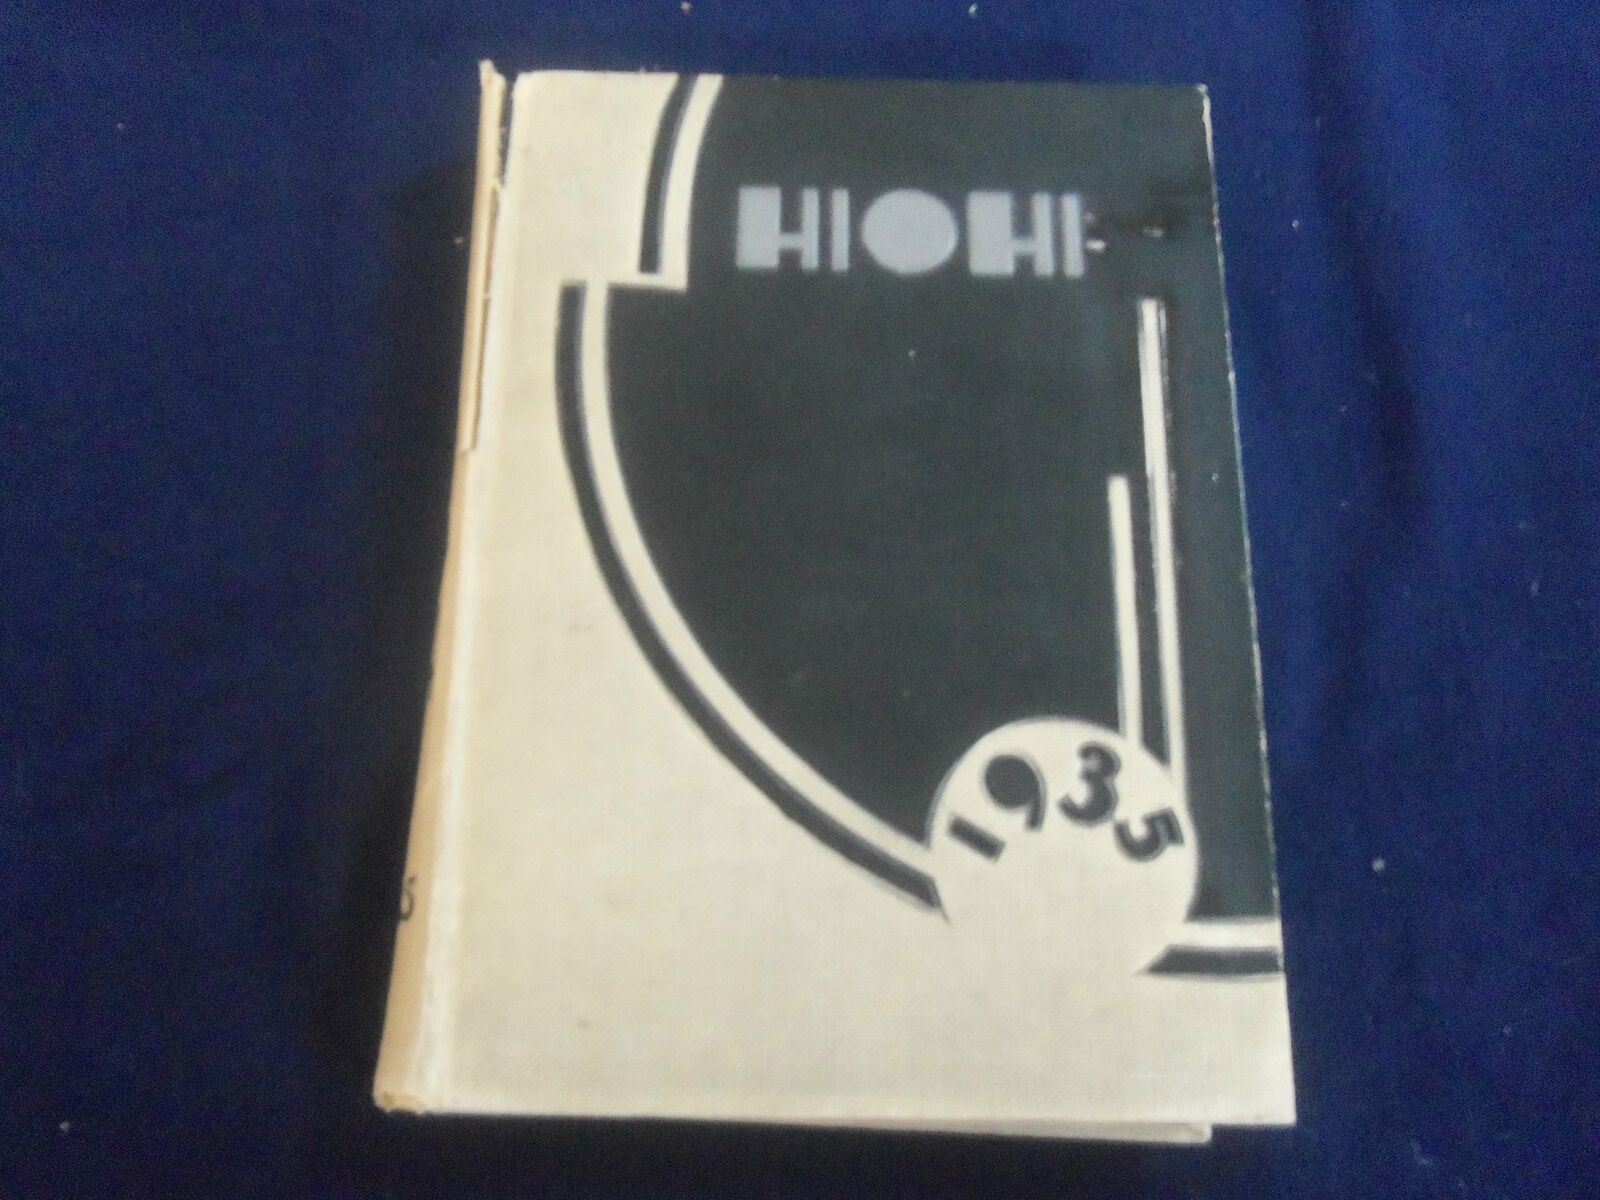 1935 THE HIOHI OBERLIN COLLEGE YEARBOOK - OBERLIN, OHIO - YB 2809